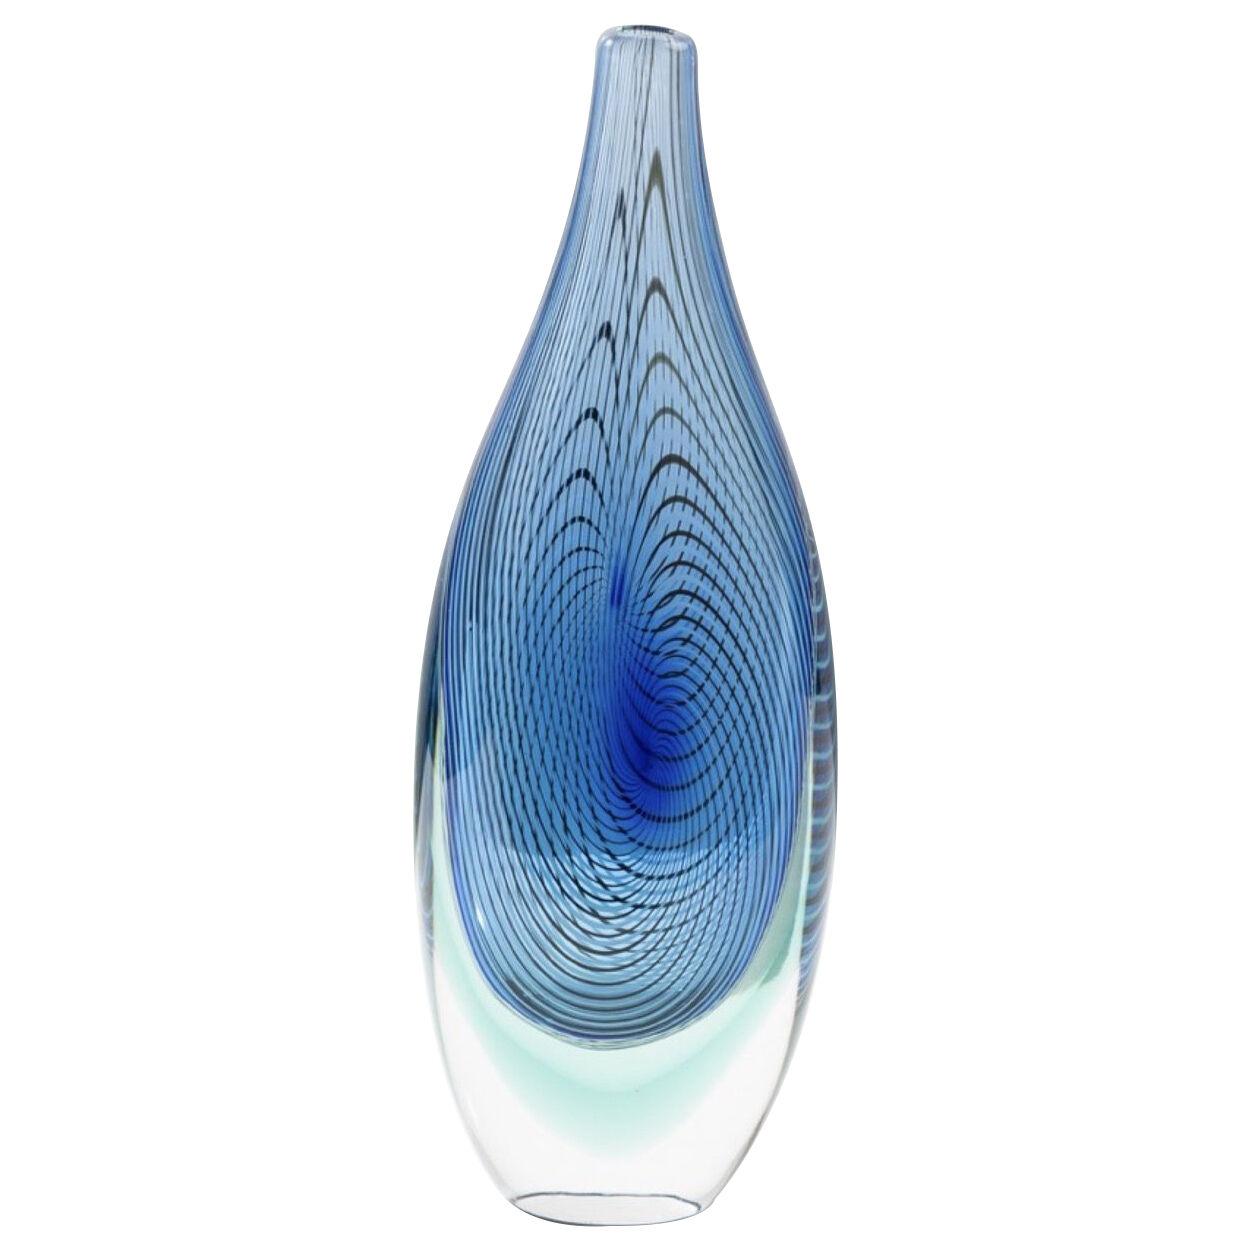 Capo Nord Murano glass vase by Giampaolo Seguso